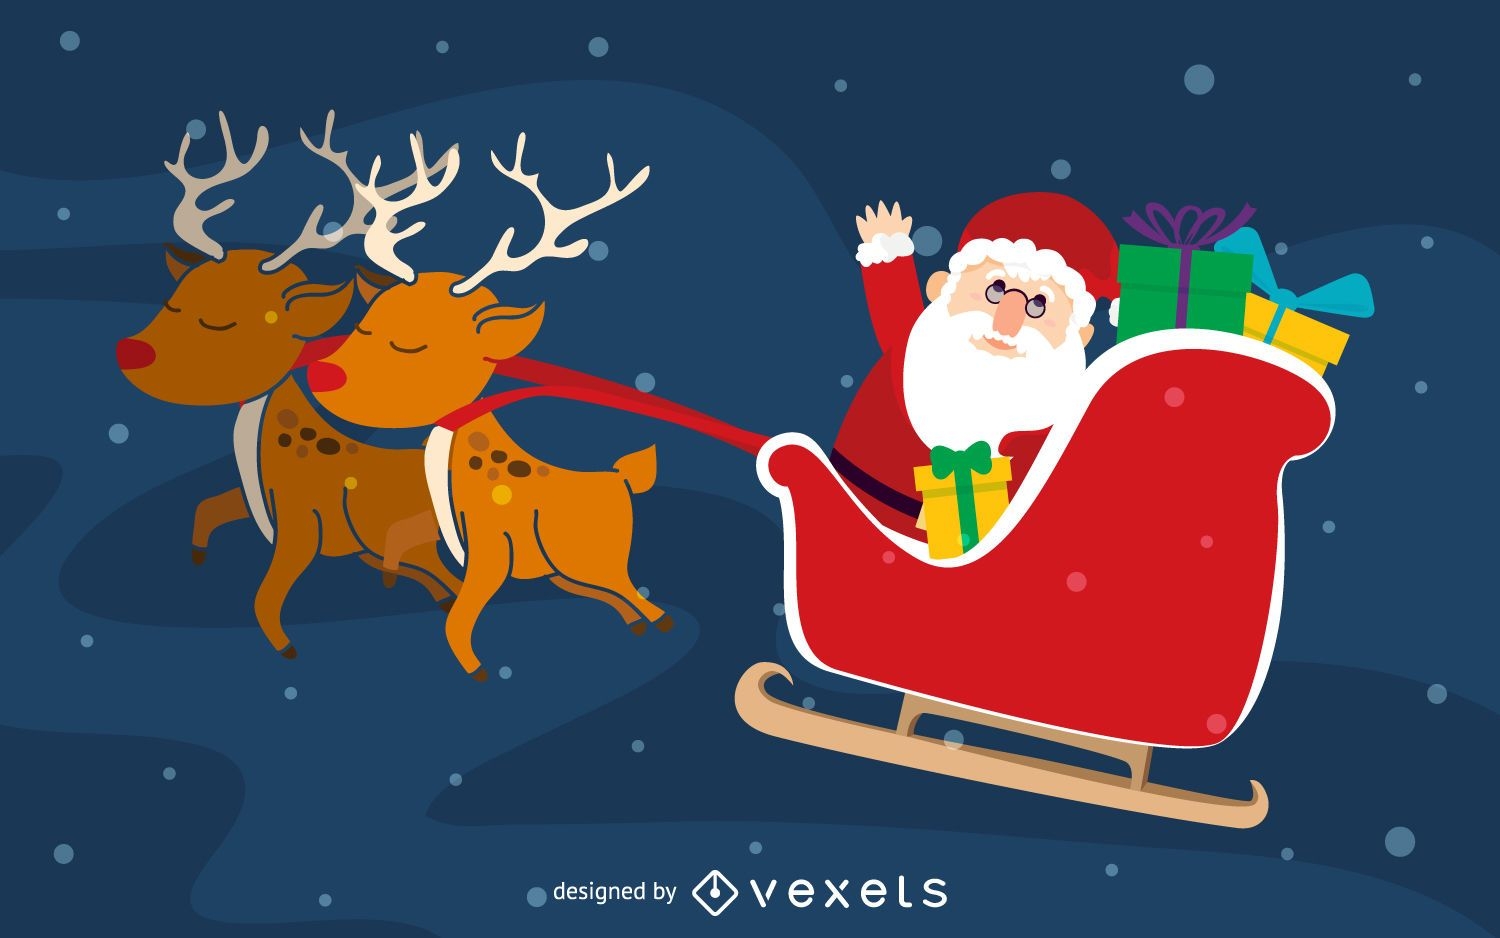 Santa on reindeer sleigh illustration